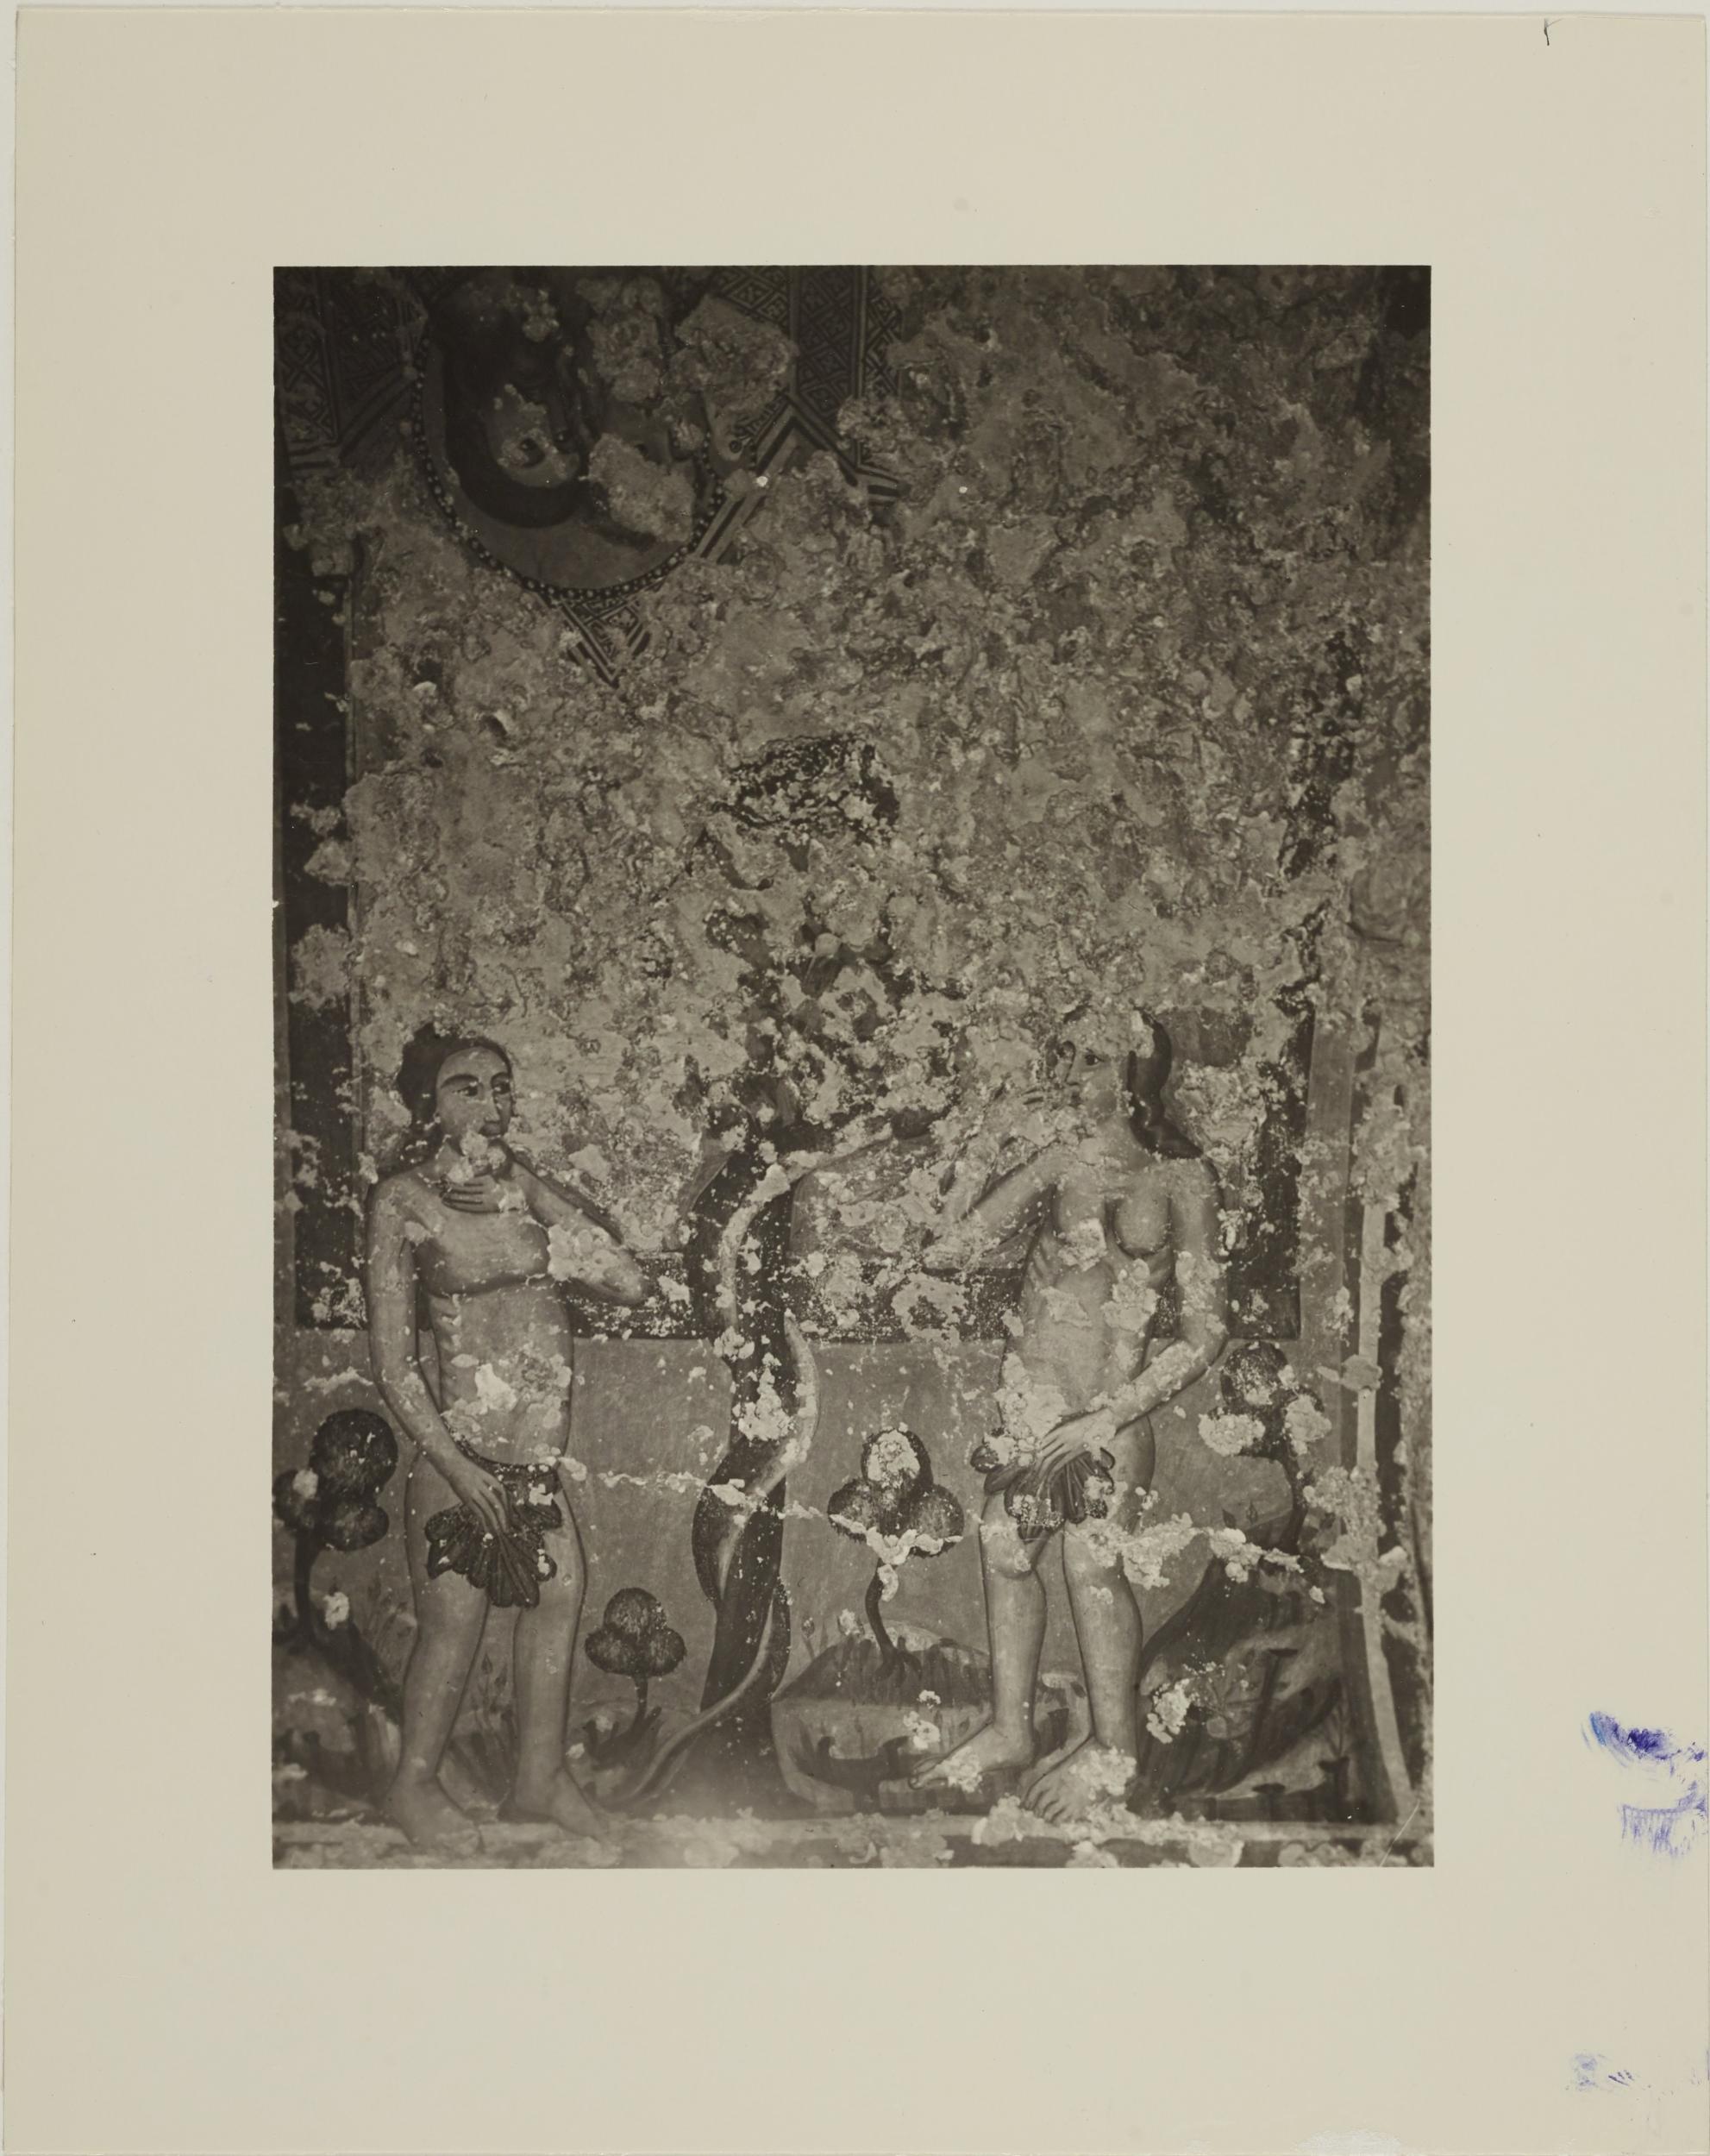 Fotografo non identificato, Andria - Chiesa di S. Croce, cripta, Adamo ed Eva, 1926-1950, gelatina ai sali d'argento/carta, MPI131862